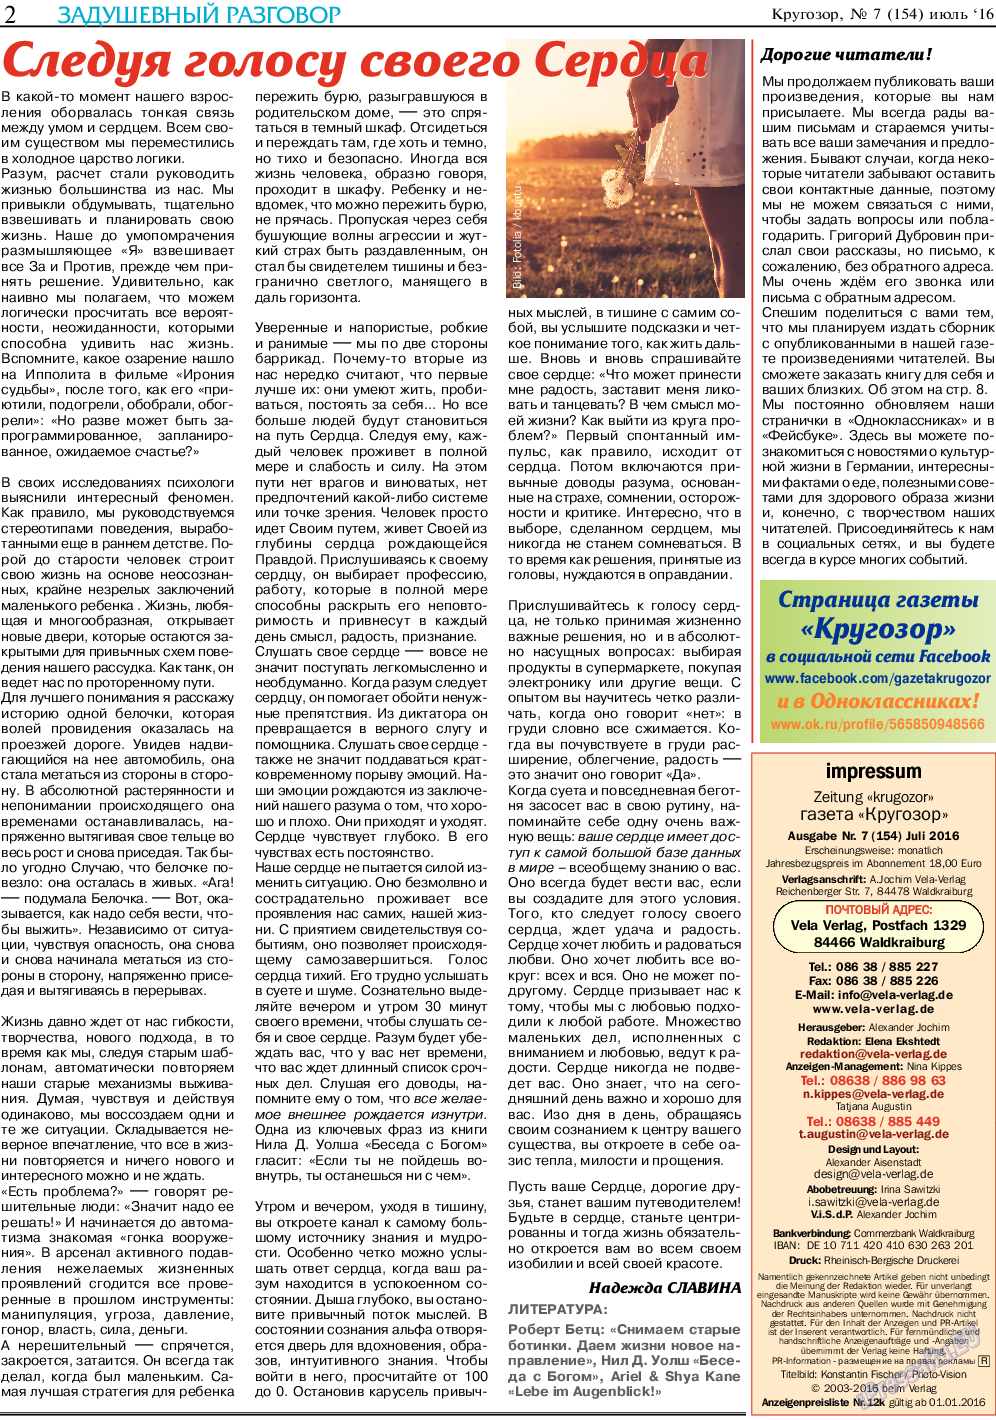 Кругозор, газета. 2016 №7 стр.2